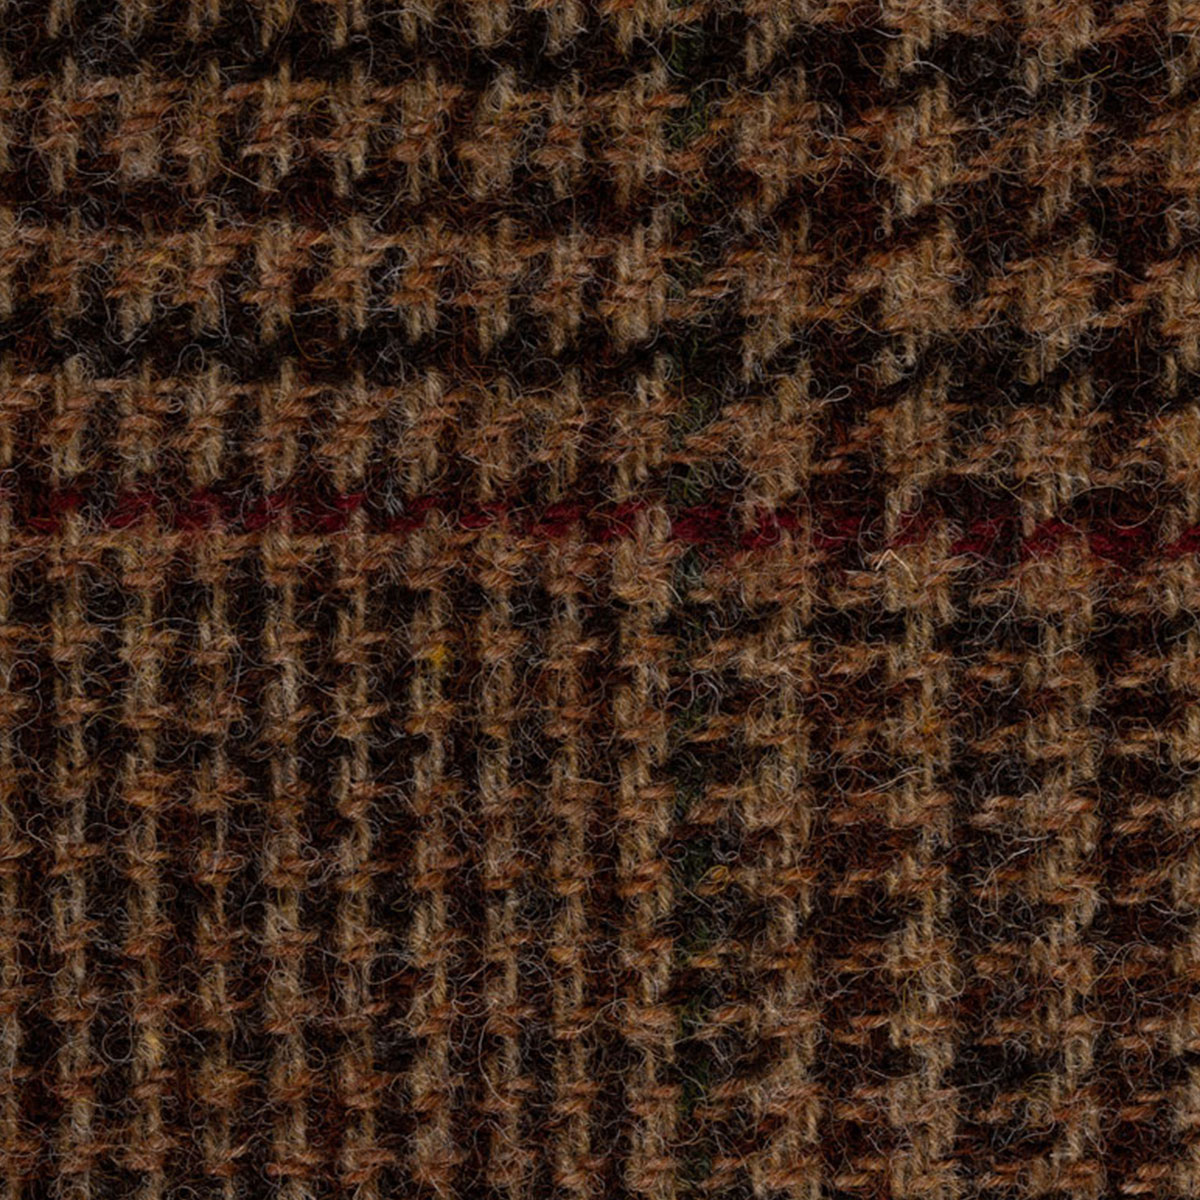 Sakko mit Glencheck-Muster in hellbraun mit feinem roten Überkaro